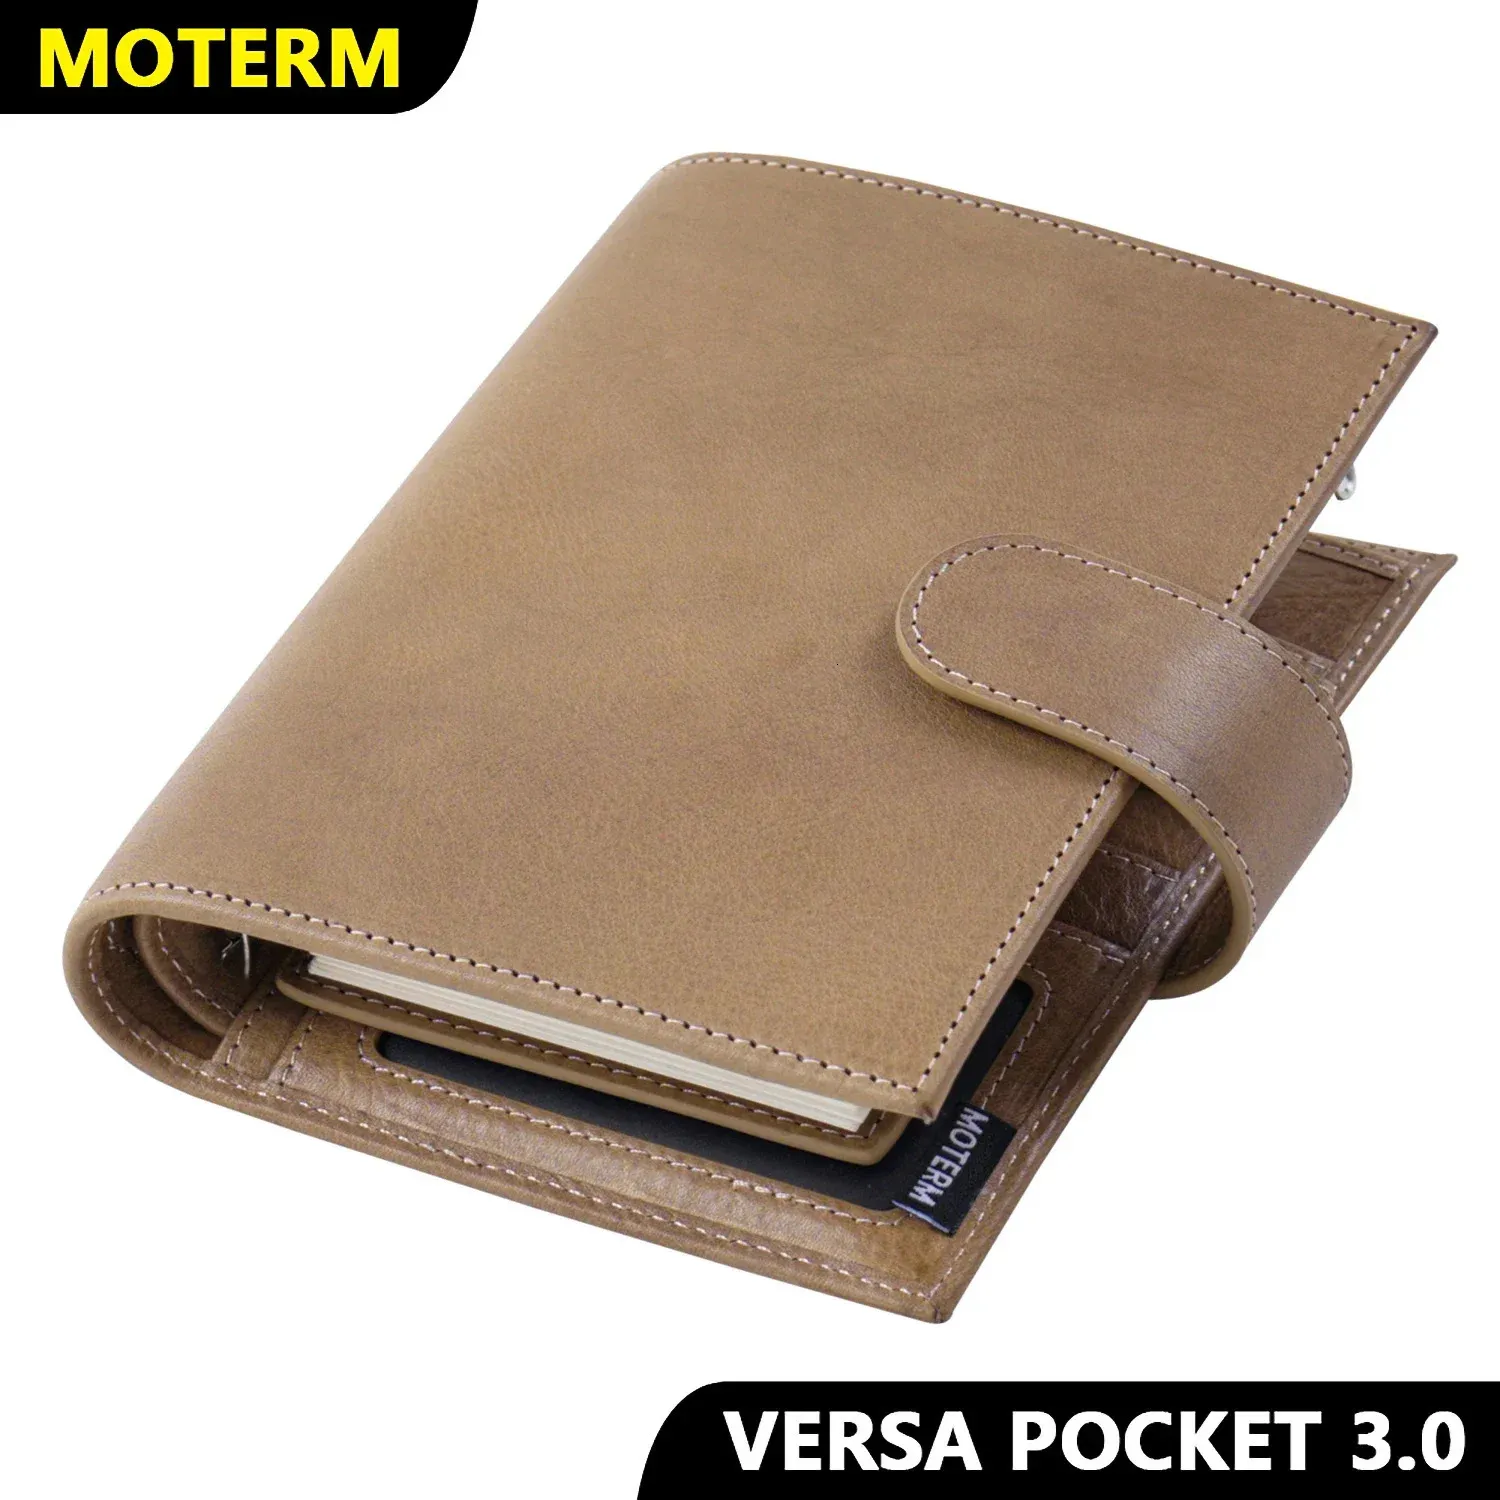 Moterm Pocket Versa 30 Pierścienie Planner Pełne ziarno Warzywa oparte z 19 mm portfelem wielofunkcyjnym dziennikiem dziennika dziennika Notatnik 240311